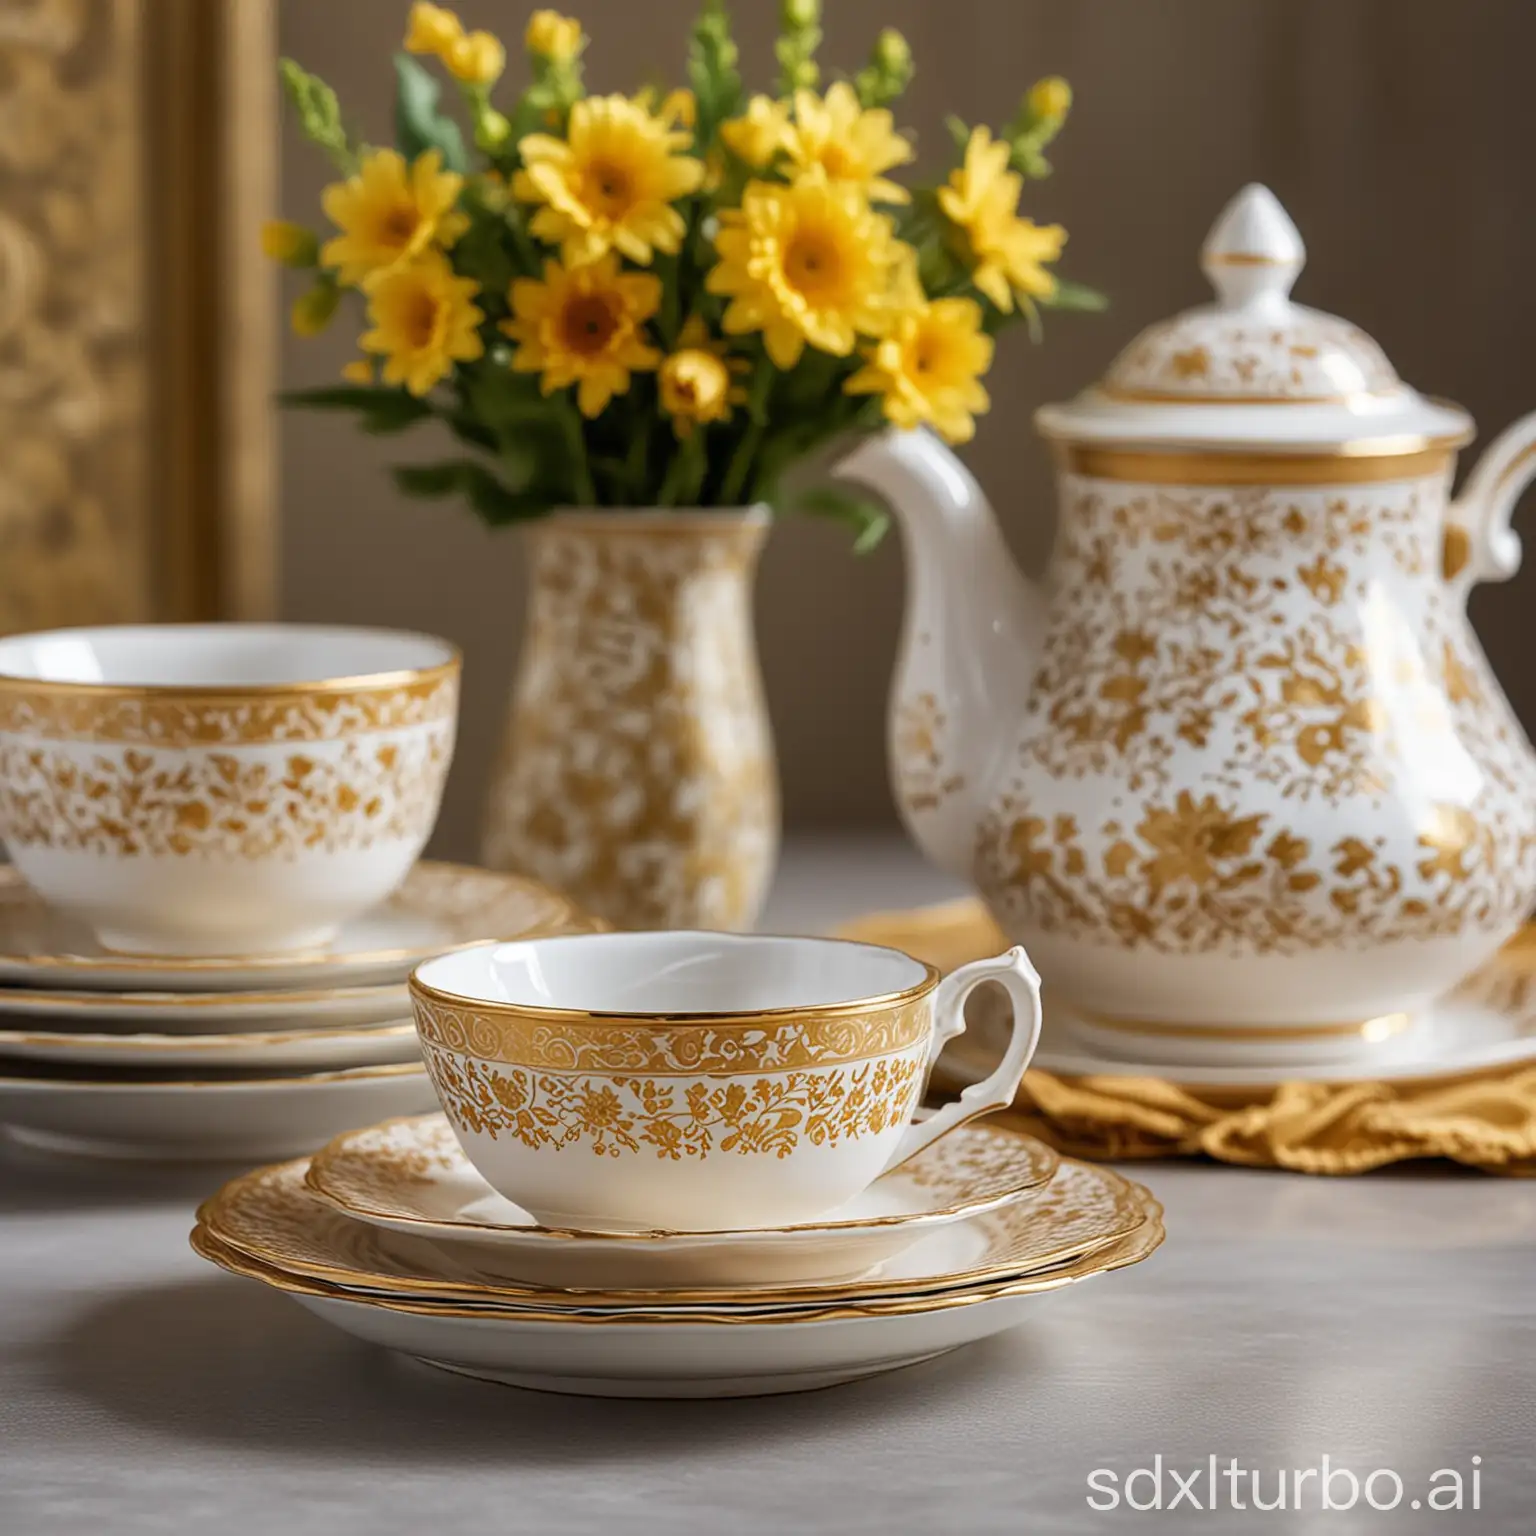 一叠盘子在中间上面有个碗金色花纹描金边，焦点准确，背景模糊，左边有花瓶，右边有茶壶